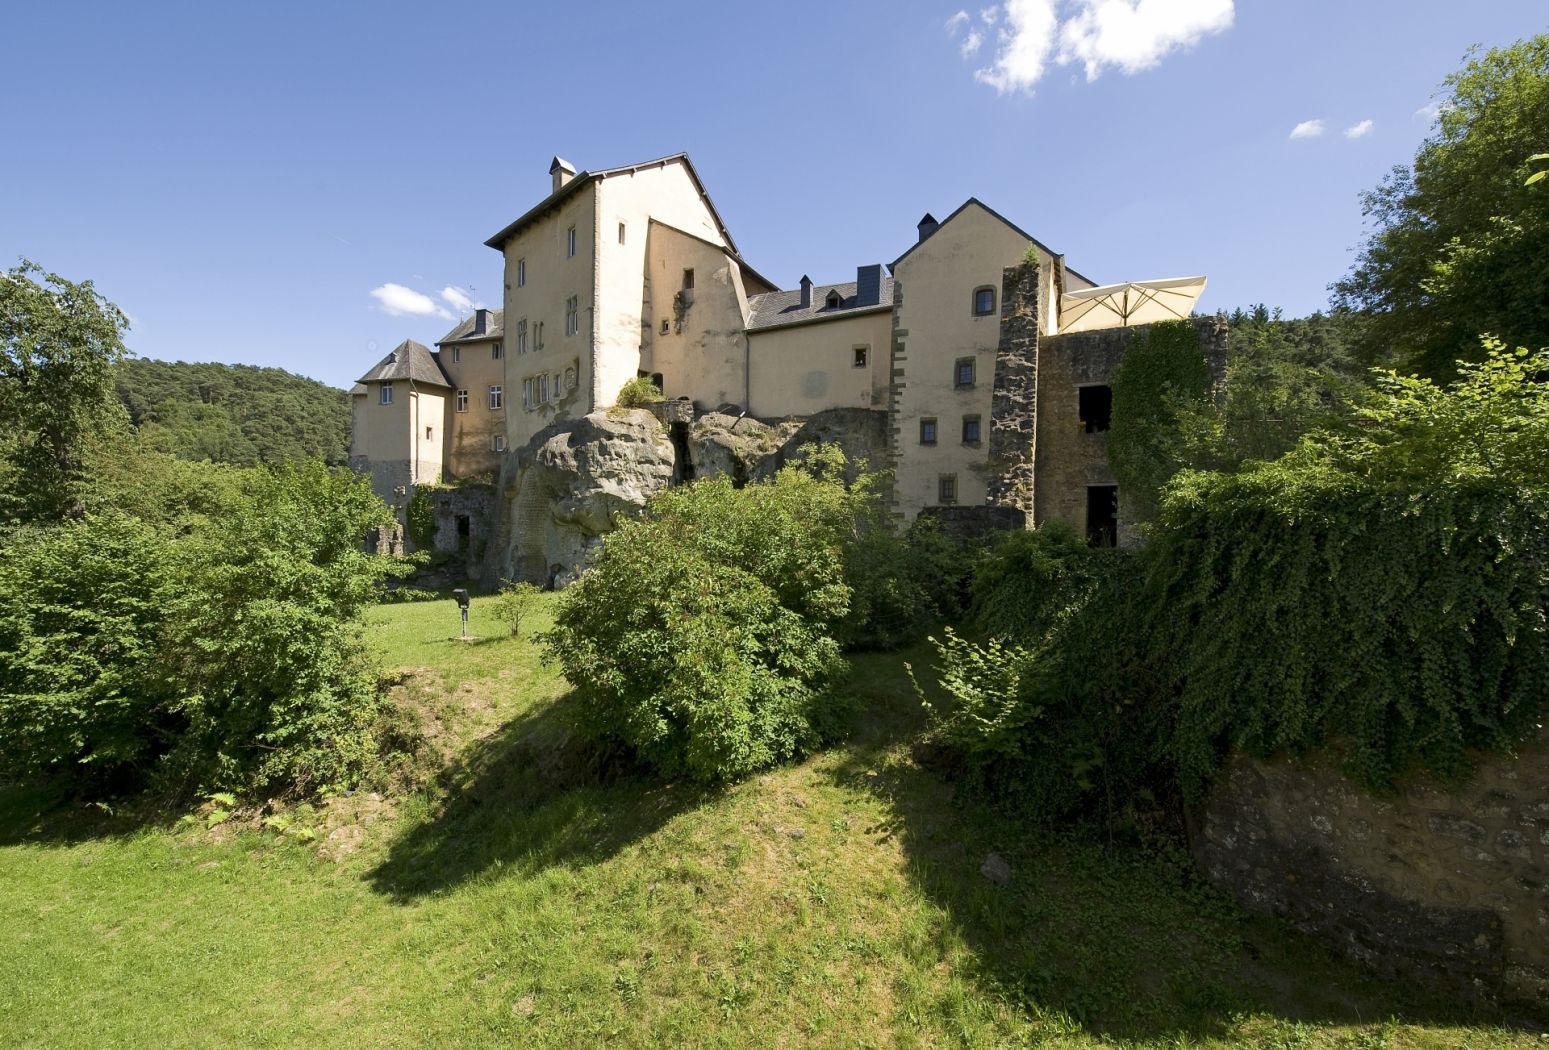 Château de Bourglinster